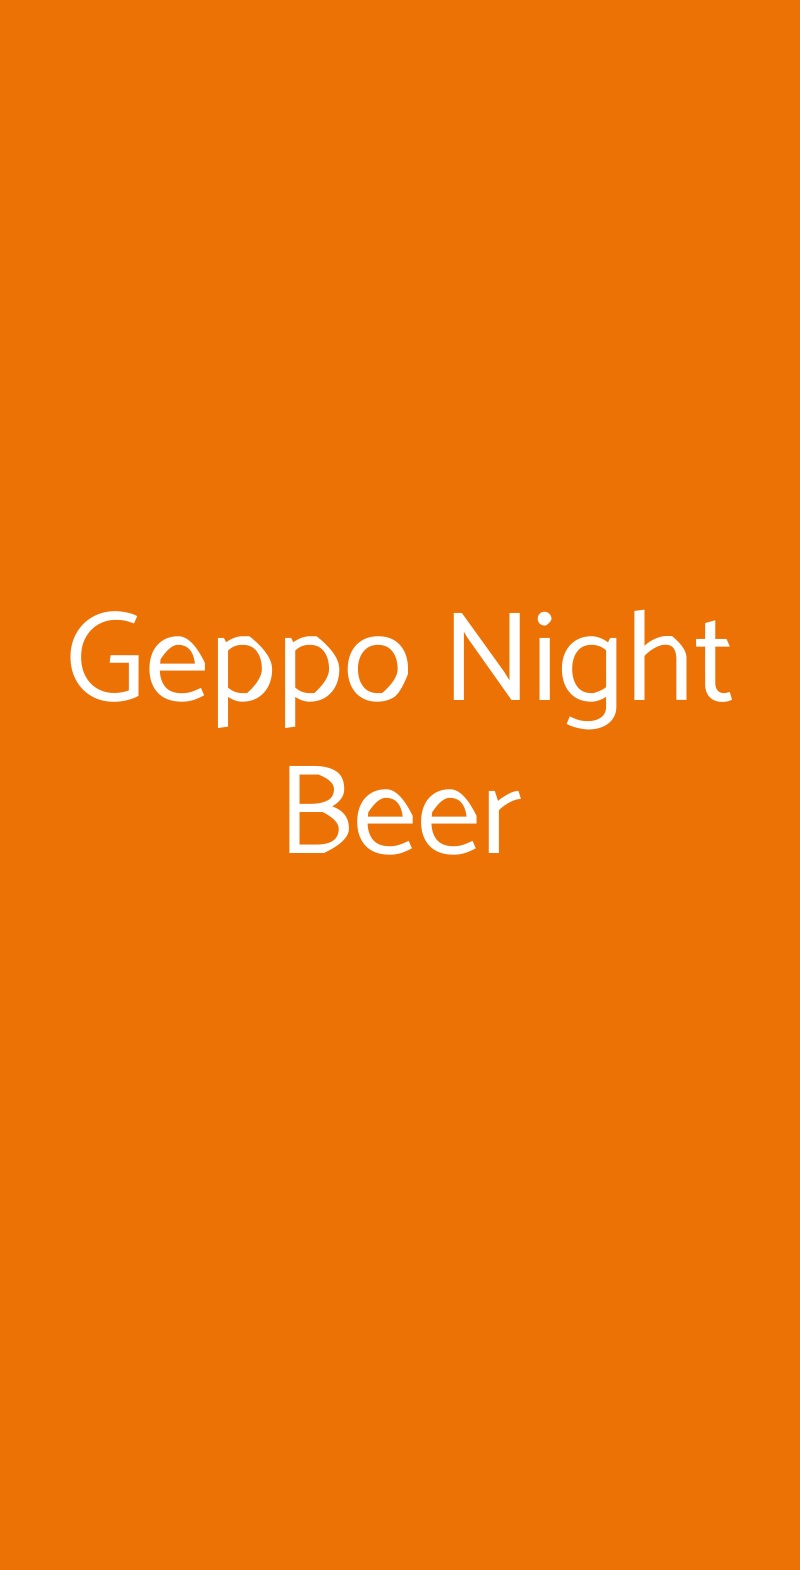 Geppo Night Beer Tivoli menù 1 pagina